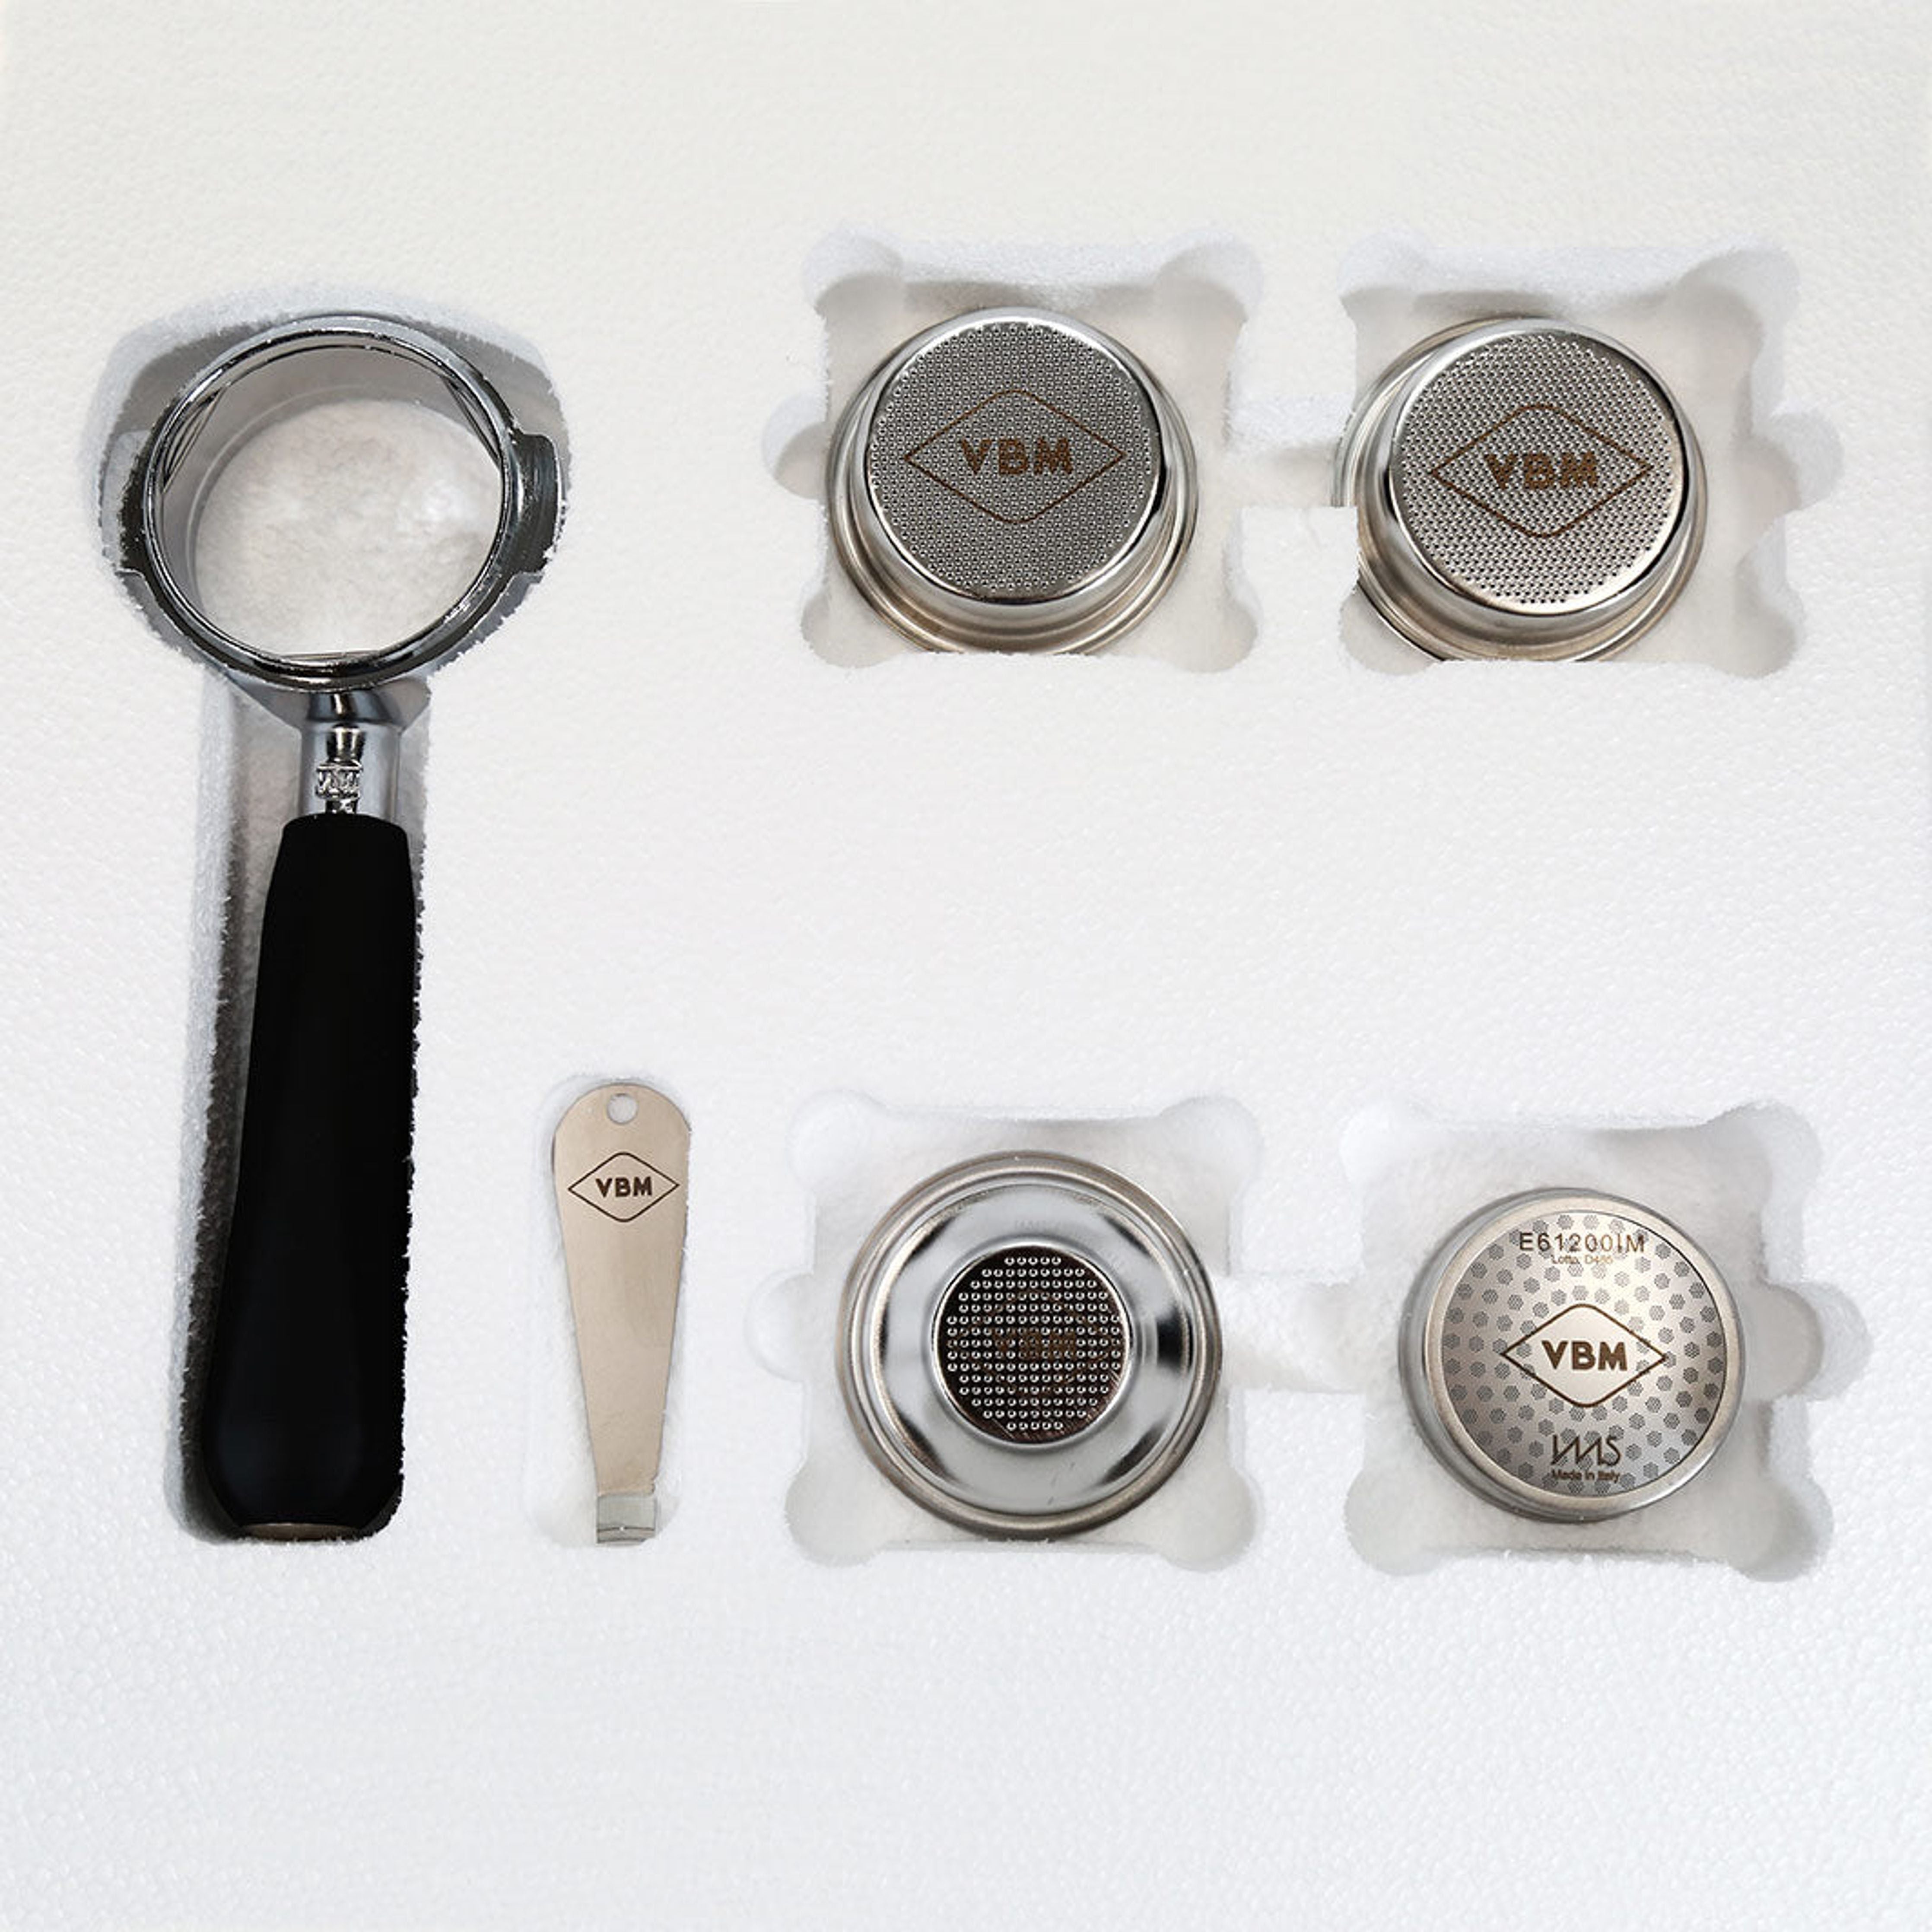 VBM Tasting Kit - Bodenloser E61 Siebträger, 3 Siebe, Dusche, Filter Remover Siebe VBM    - Rheinland.Coffee